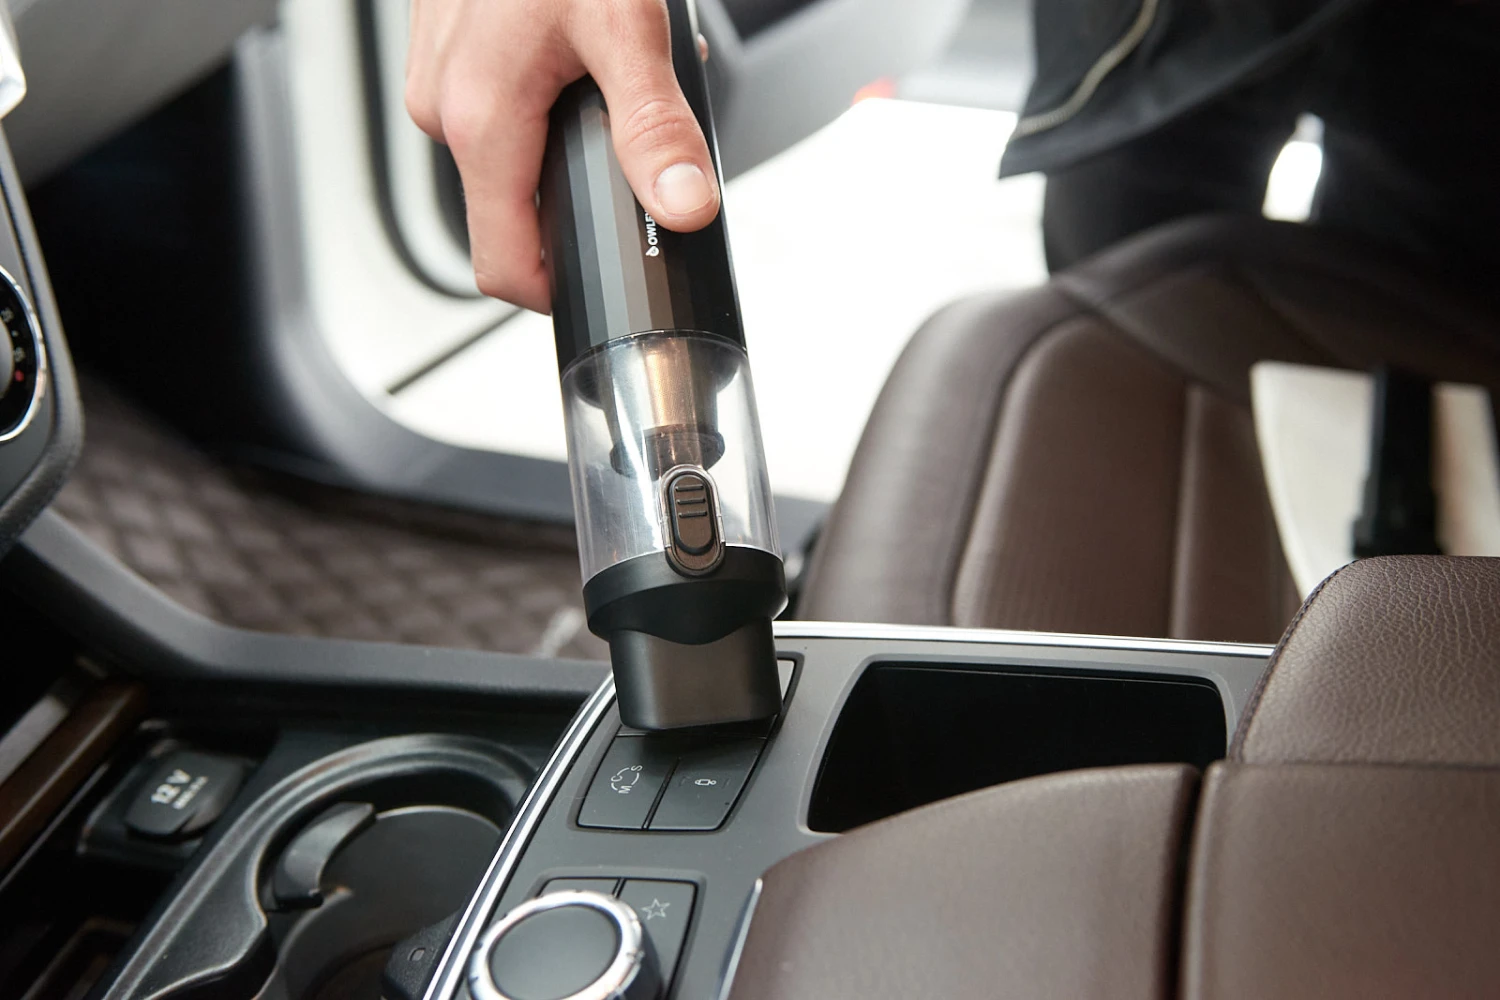 wireless handheld car vacuum cleaner for Honda Fit